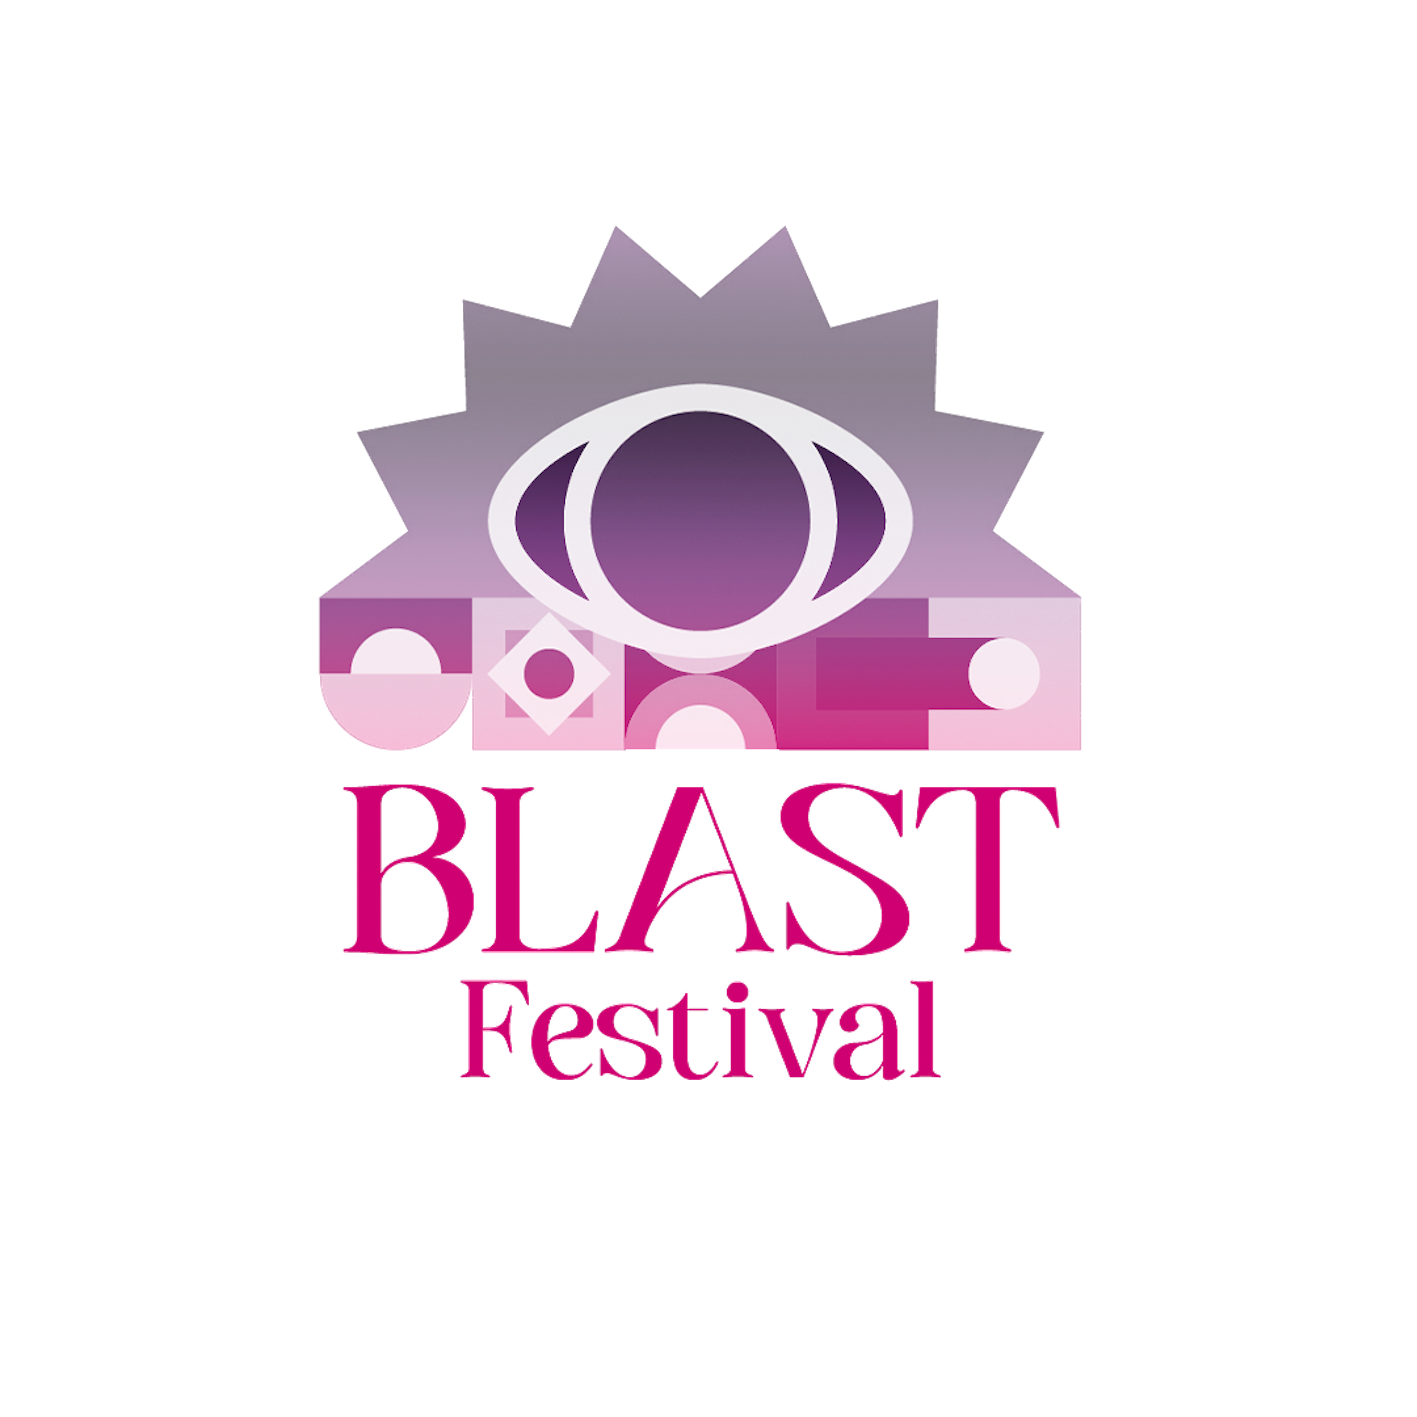 BLAST Festival © Steven Lesper